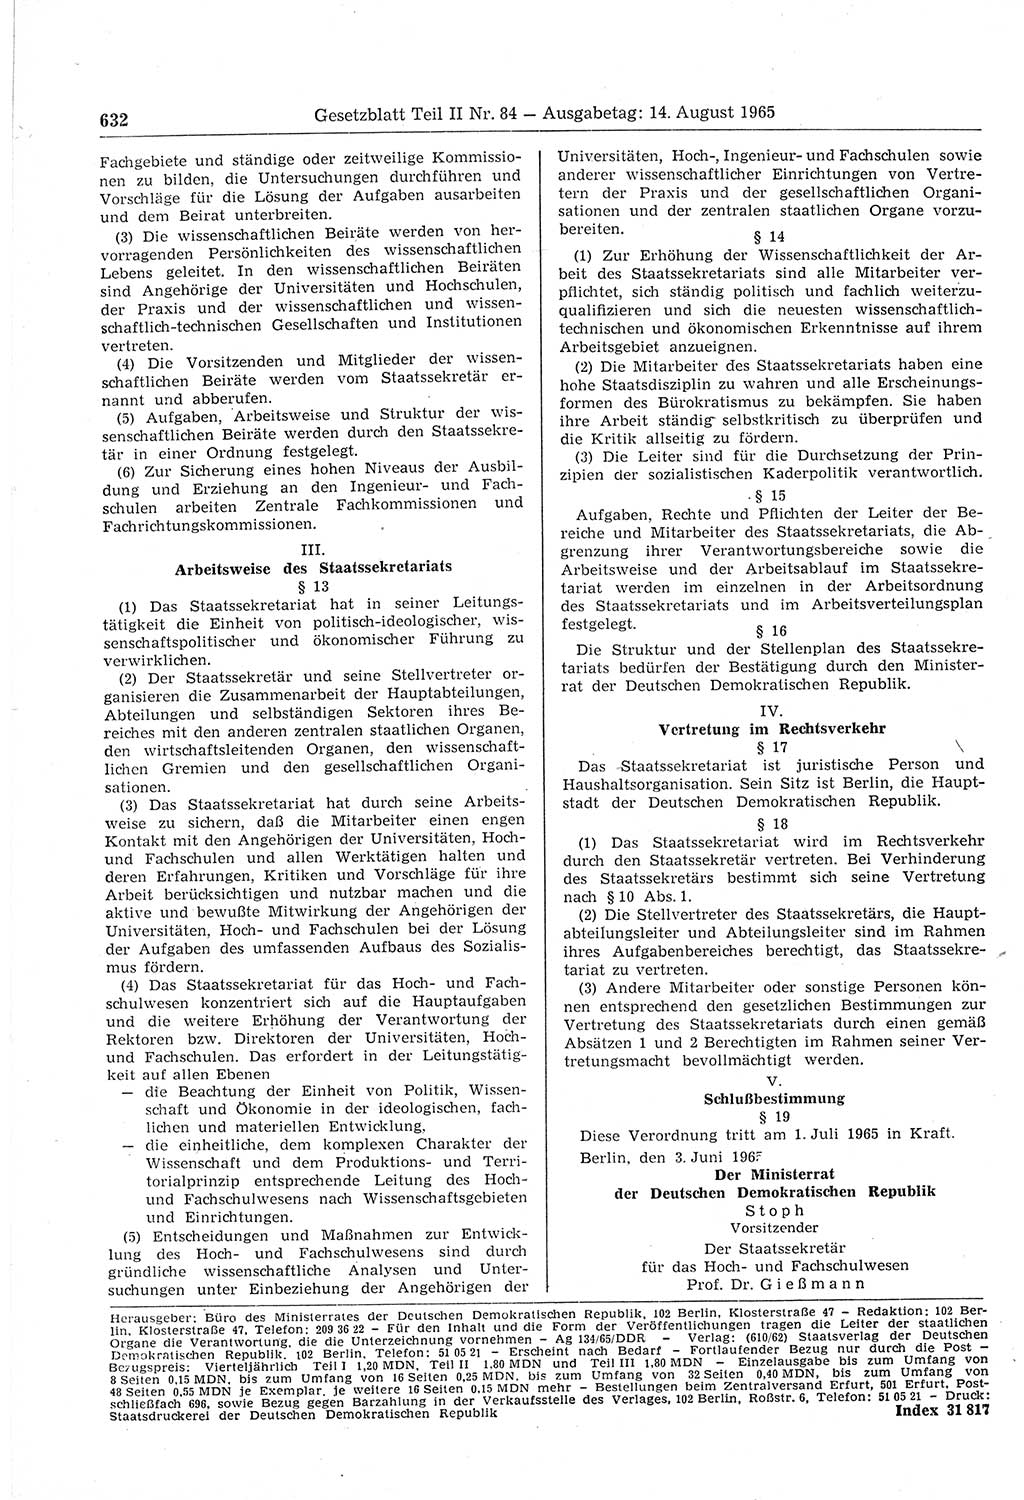 Gesetzblatt (GBl.) der Deutschen Demokratischen Republik (DDR) Teil ⅠⅠ 1965, Seite 632 (GBl. DDR ⅠⅠ 1965, S. 632)